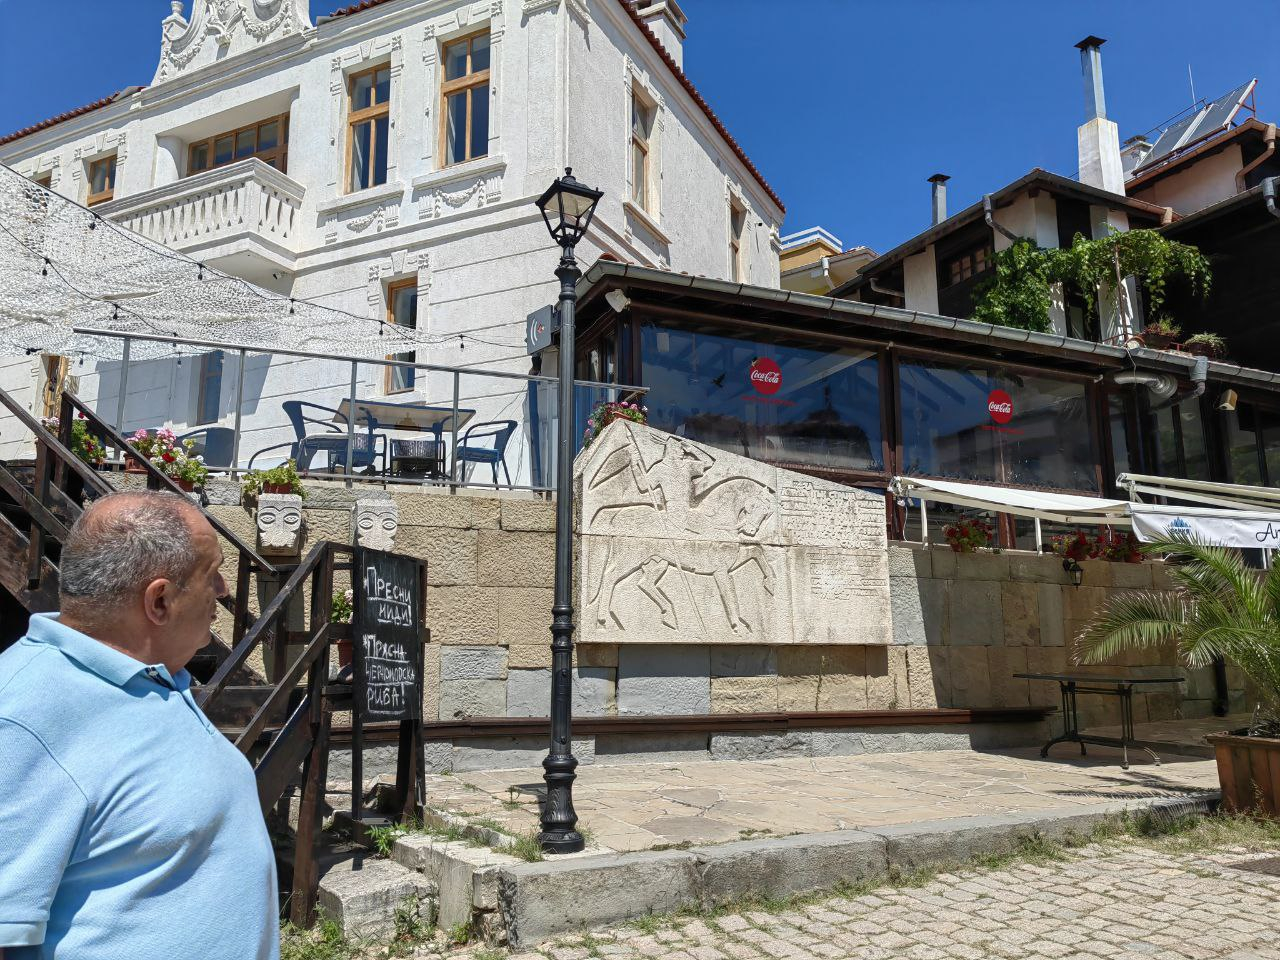 Ресторантьор зазида прозорците на паметник на културата в Созопол СНИМКИ